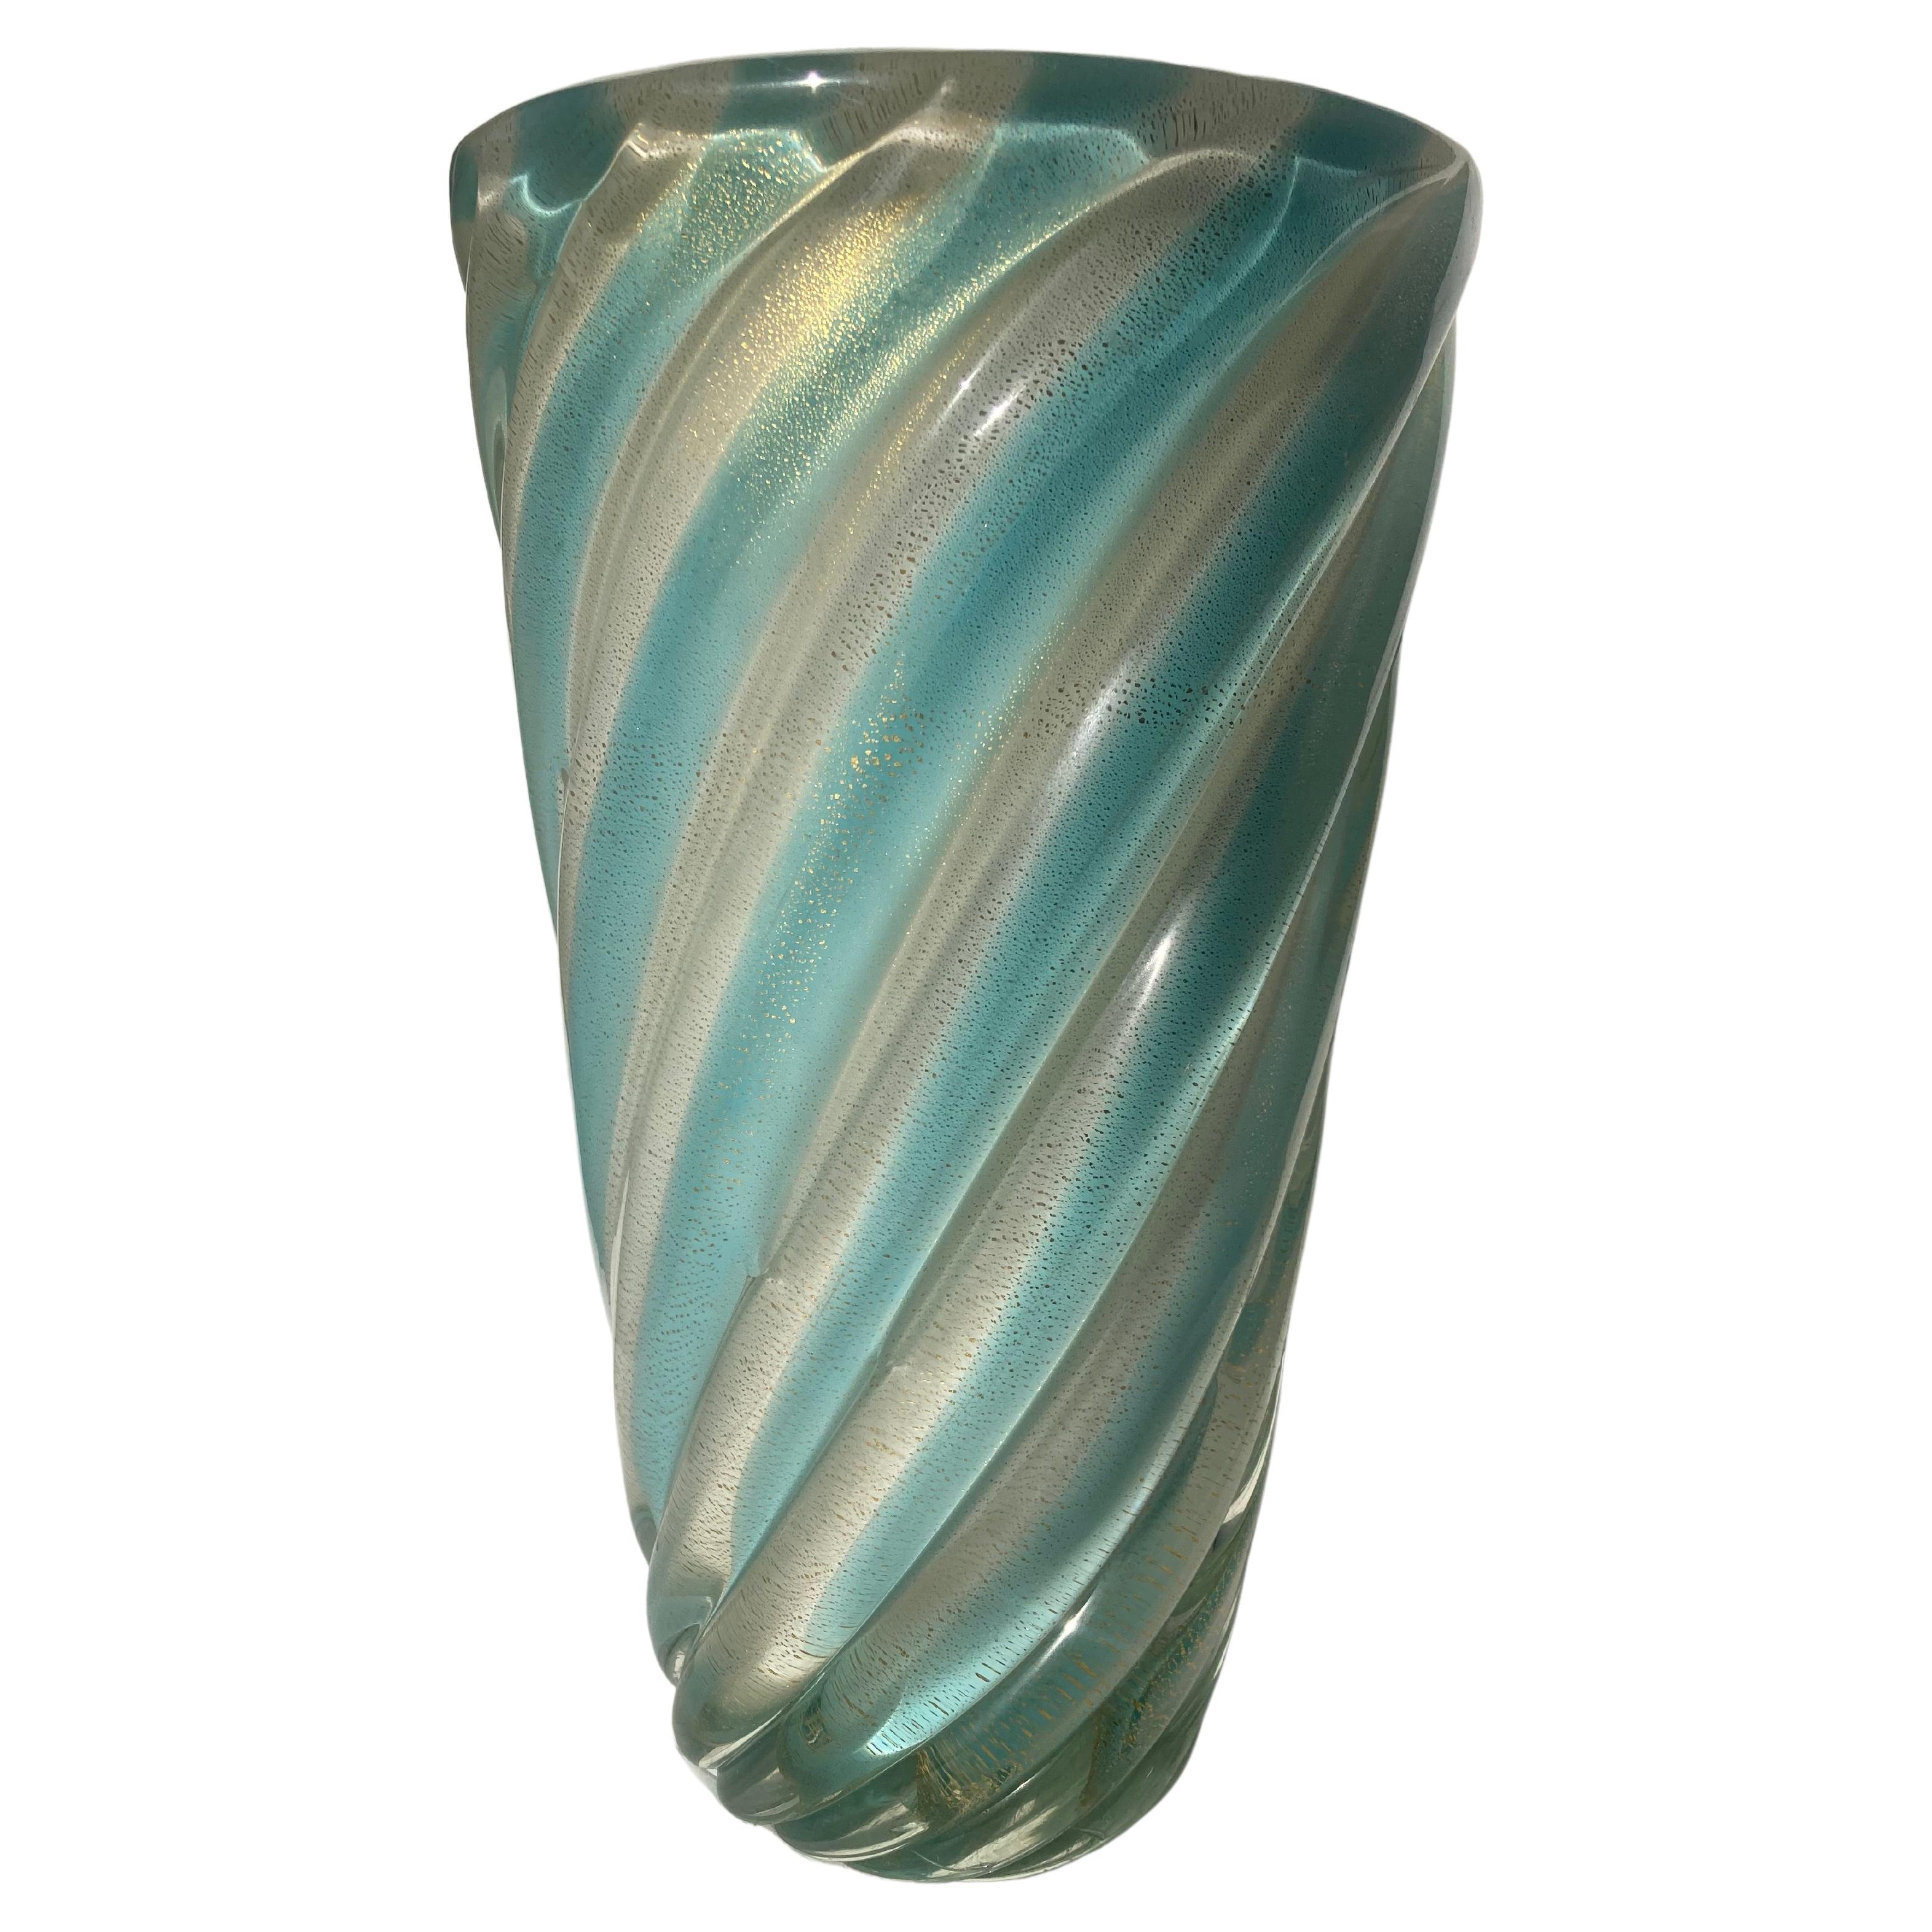 Archimede Seguso Gran jarrón de cristal de Murano opalino con escamas de oro